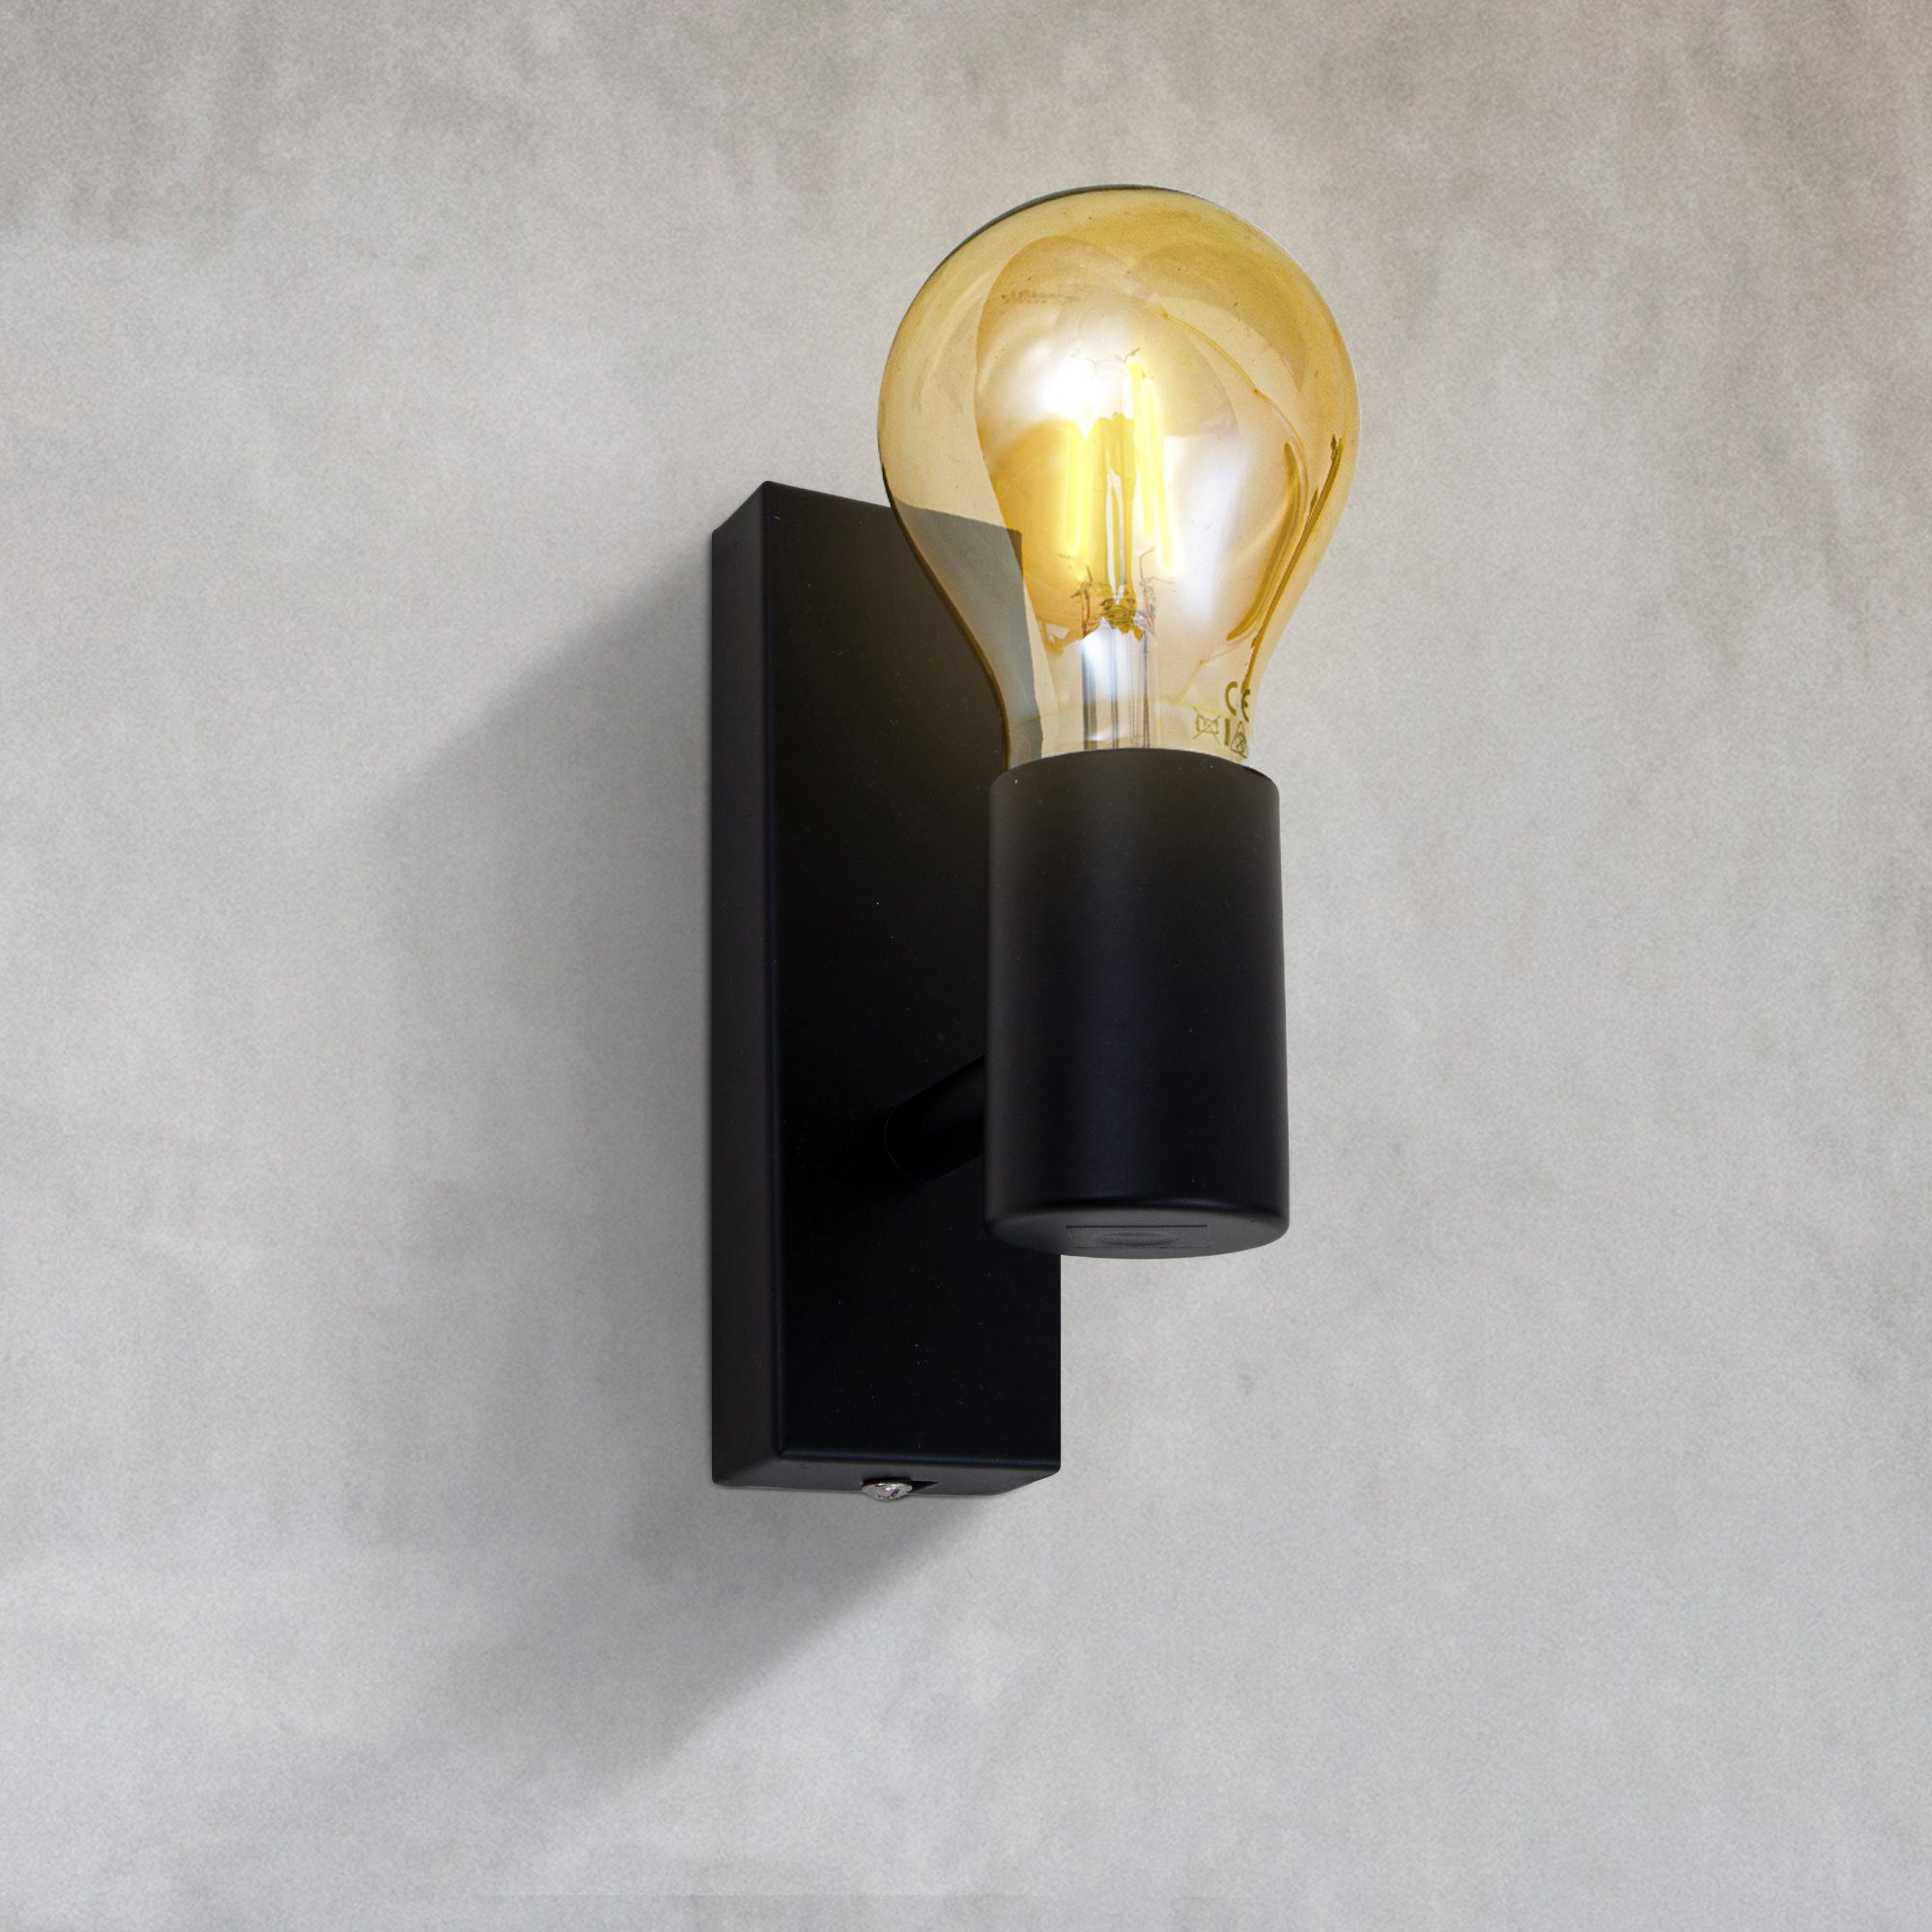 Vintage Wohnzimmer Industrie Wandlampe Flur E27 LED Retro Leuchtmittel Wandspot matt Warmweiß, wechselbar, B.K.Licht Wandleuchte,